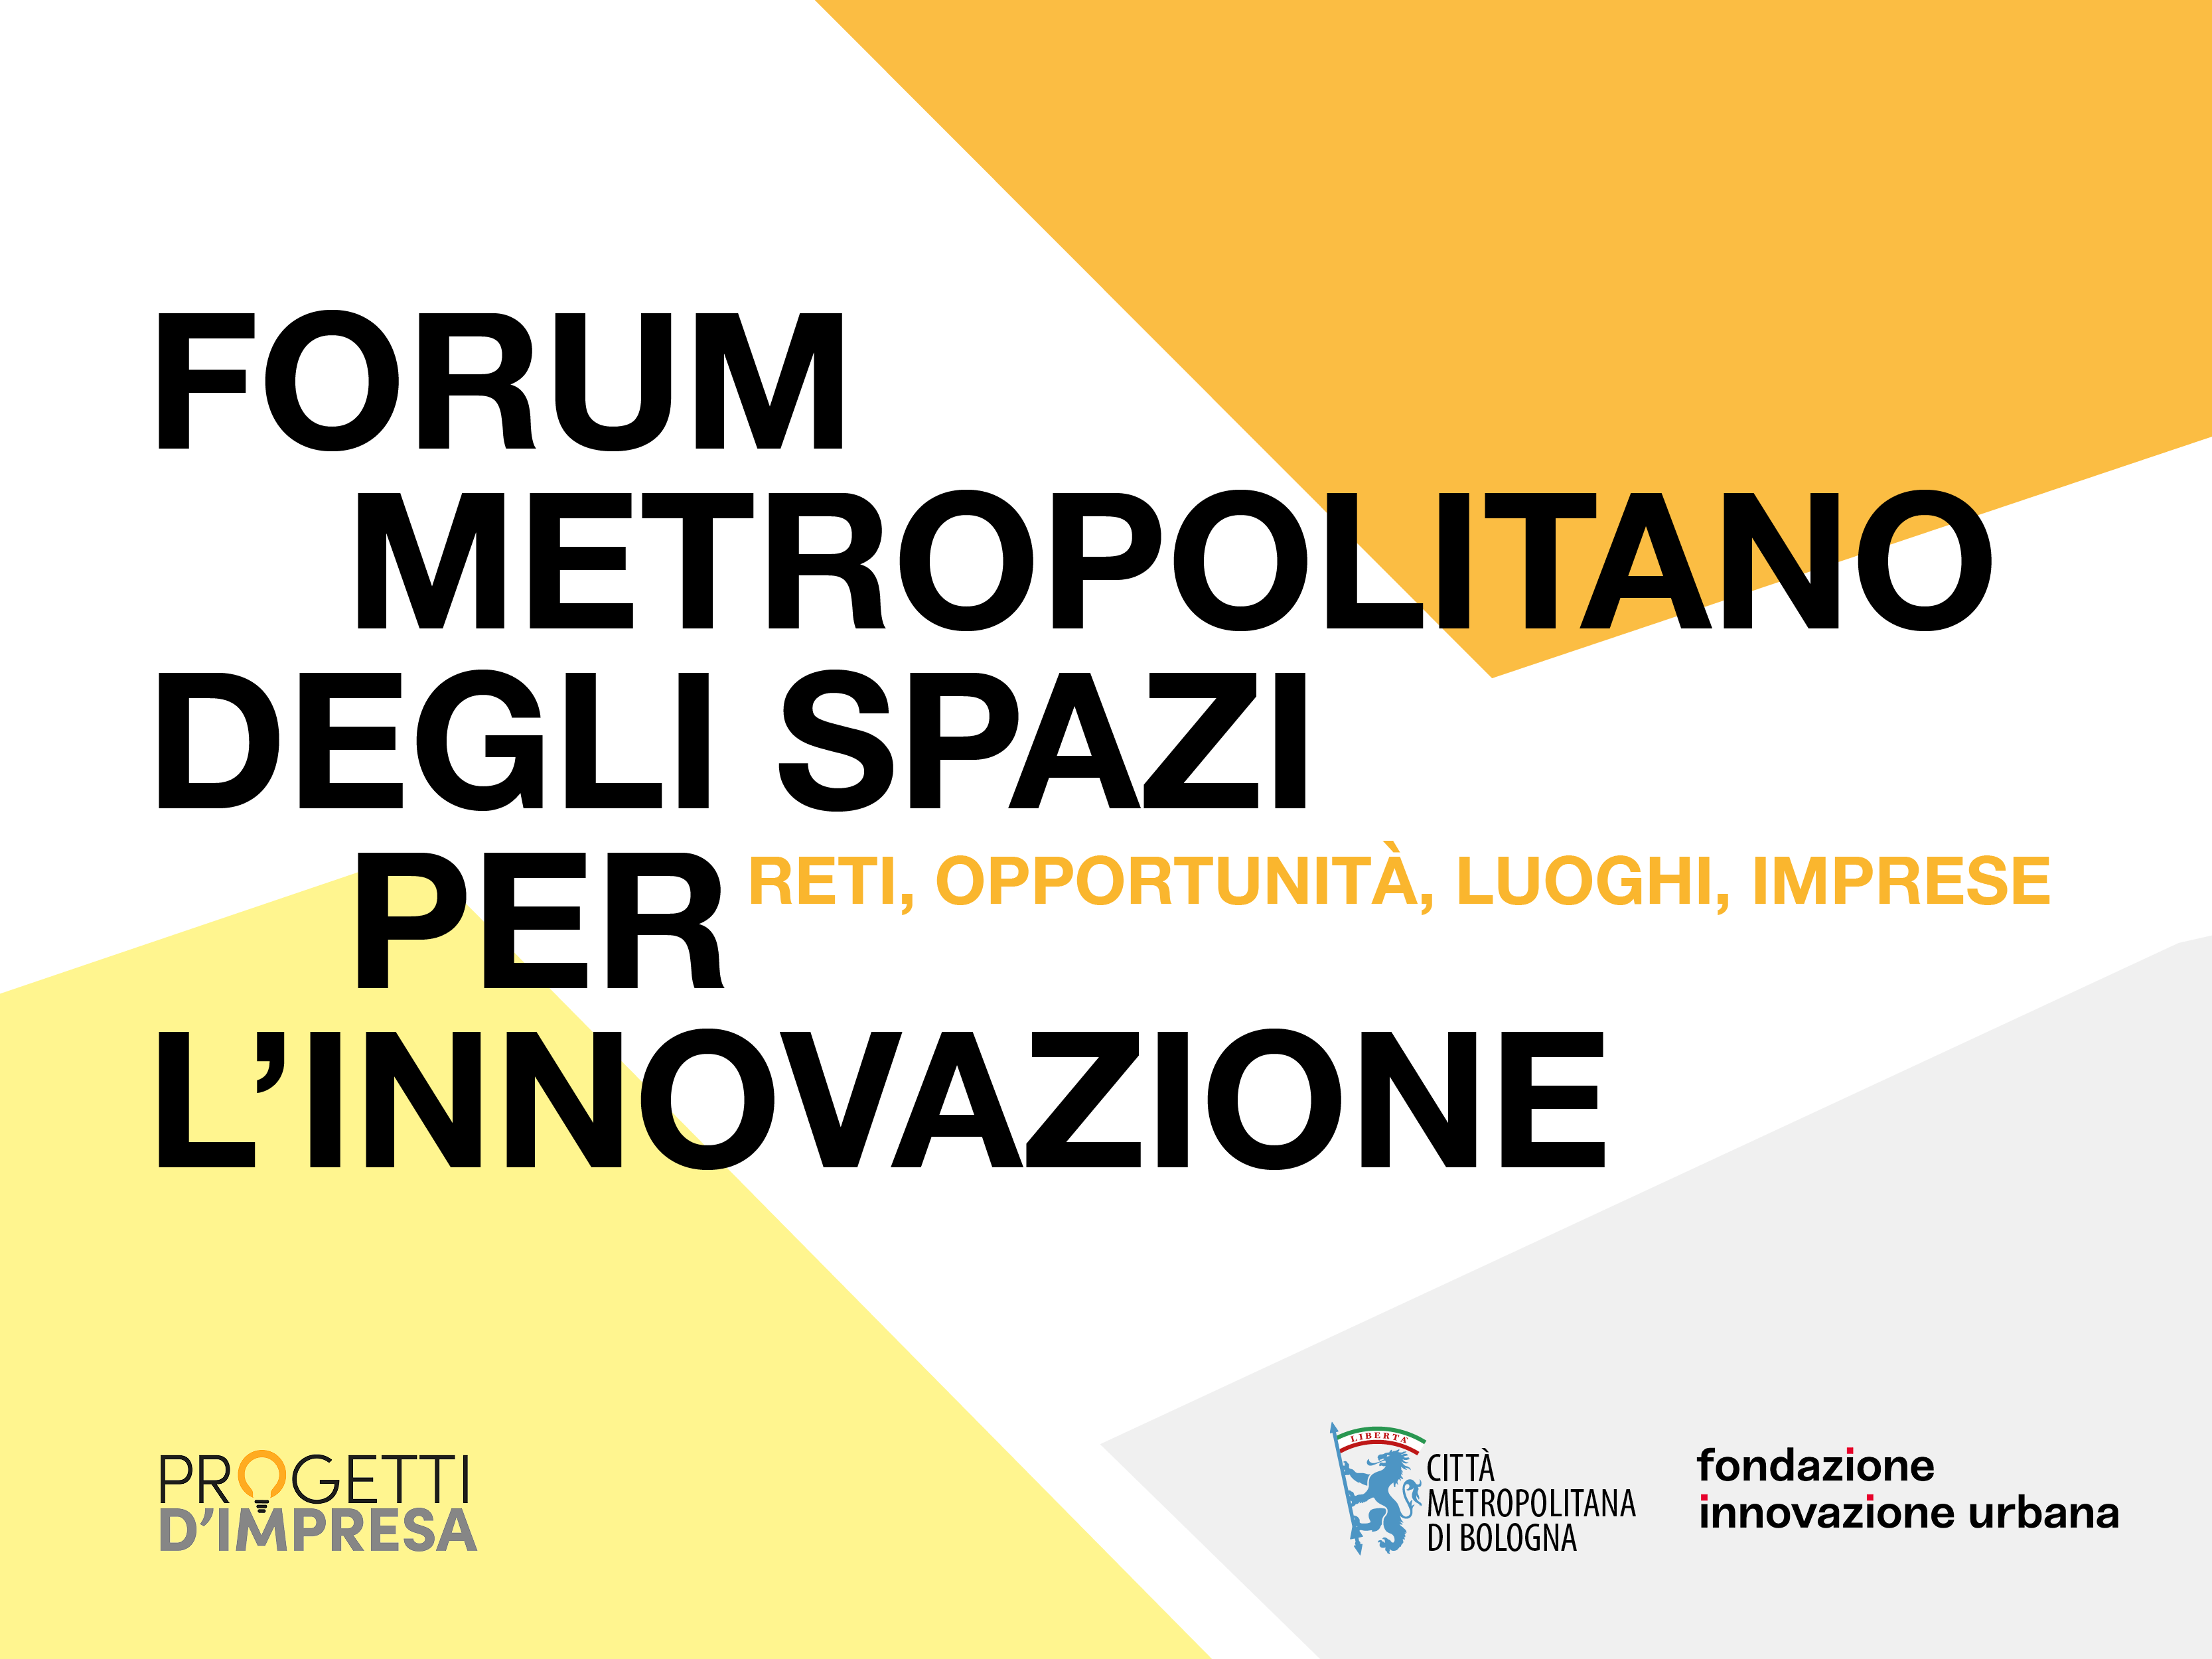 Forum metropolitano degli spazi per l'innovazione